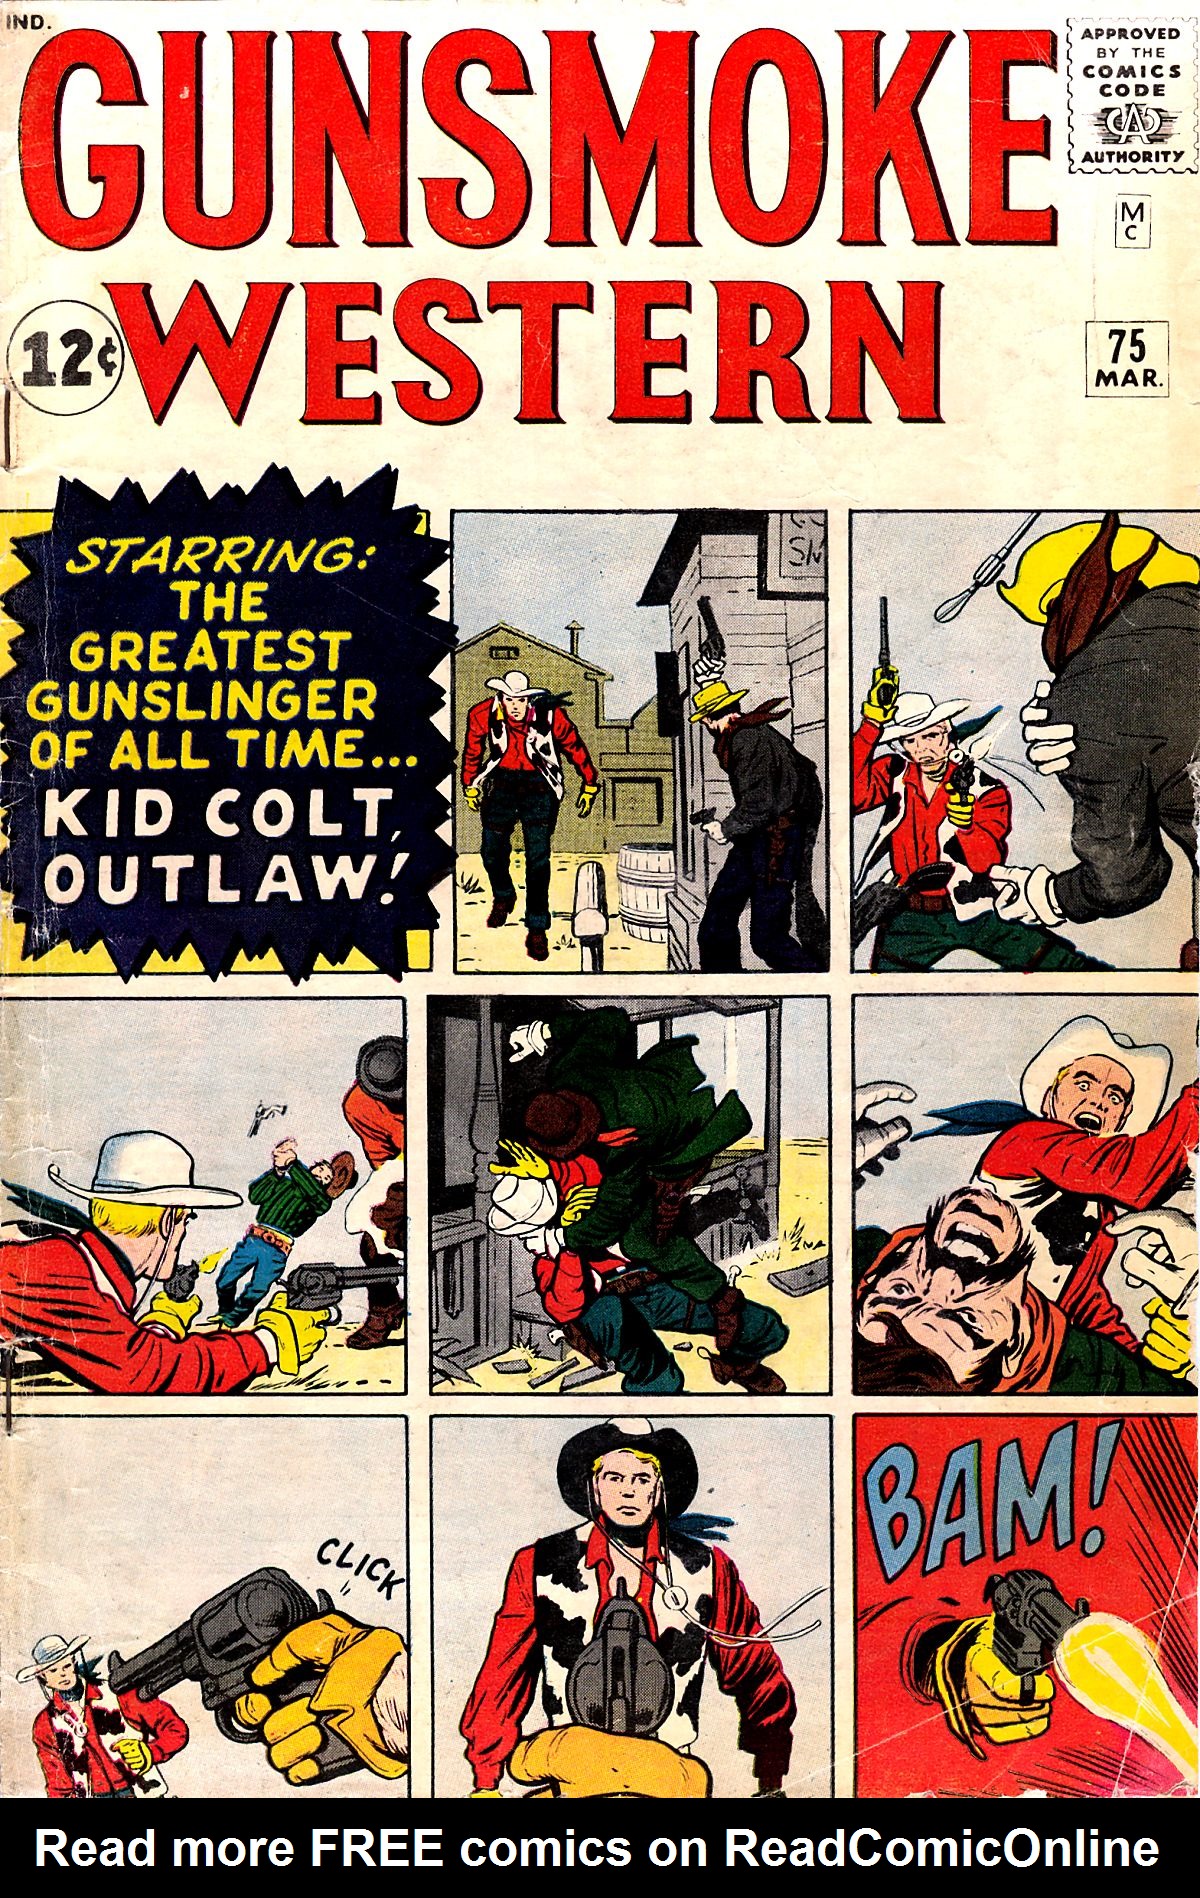 Read online Gunsmoke Western comic -  Issue #75 - 1